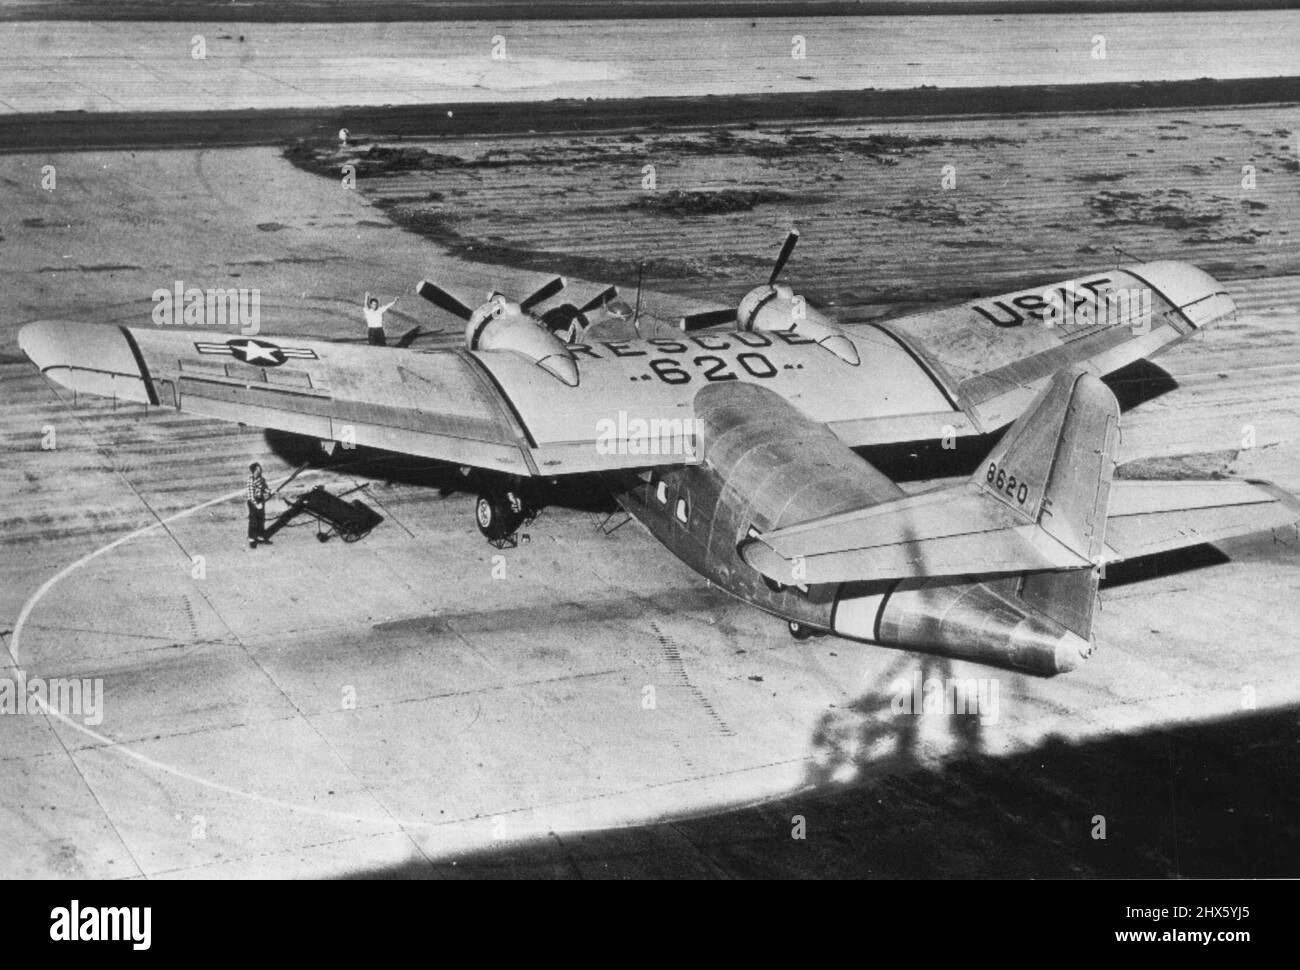 Pour les resues arctiques -- (ci-dessus) ce Raider de Northrop C-125 est le premier de 13 construit pour les missions de sauvetage de l'US Air Force dans l'Arctique. Il porte des marques jaune vif -orange l'identifiant comme une embarcation de sauvetage. 26 juin 1950.;pour les resues arctiques -- (ci-dessus) ce Raider de Northrop C-125 est le premier de 13 construit pour les missions de sauvetage de l'US Air Force dans l'Arctique. Il porte des marques jaune vif -orange l'identifiant comme une embarcation de sauvetage. Banque D'Images